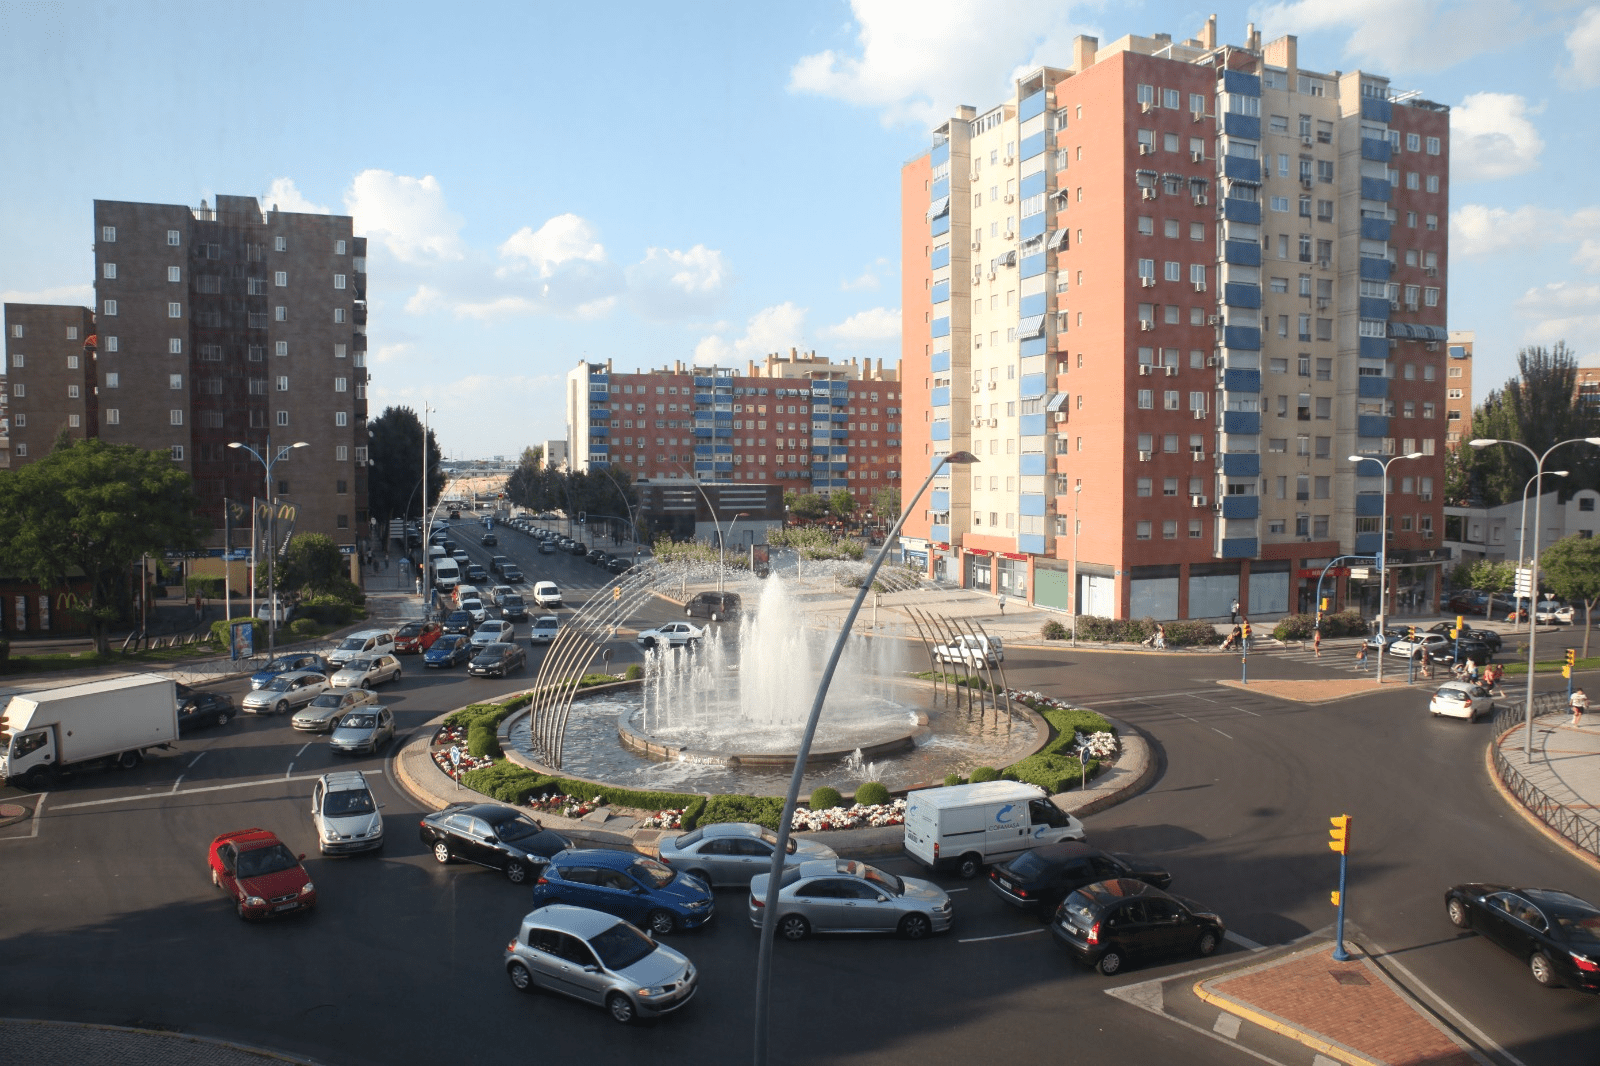 El inicio de las obras del Canal de Isabel II para mejorar la red de saneamiento en la rotonda de la calle Leganés con avenida de la Hispanidad provocará restricciones en el tráfico durante aproximadamente dos meses